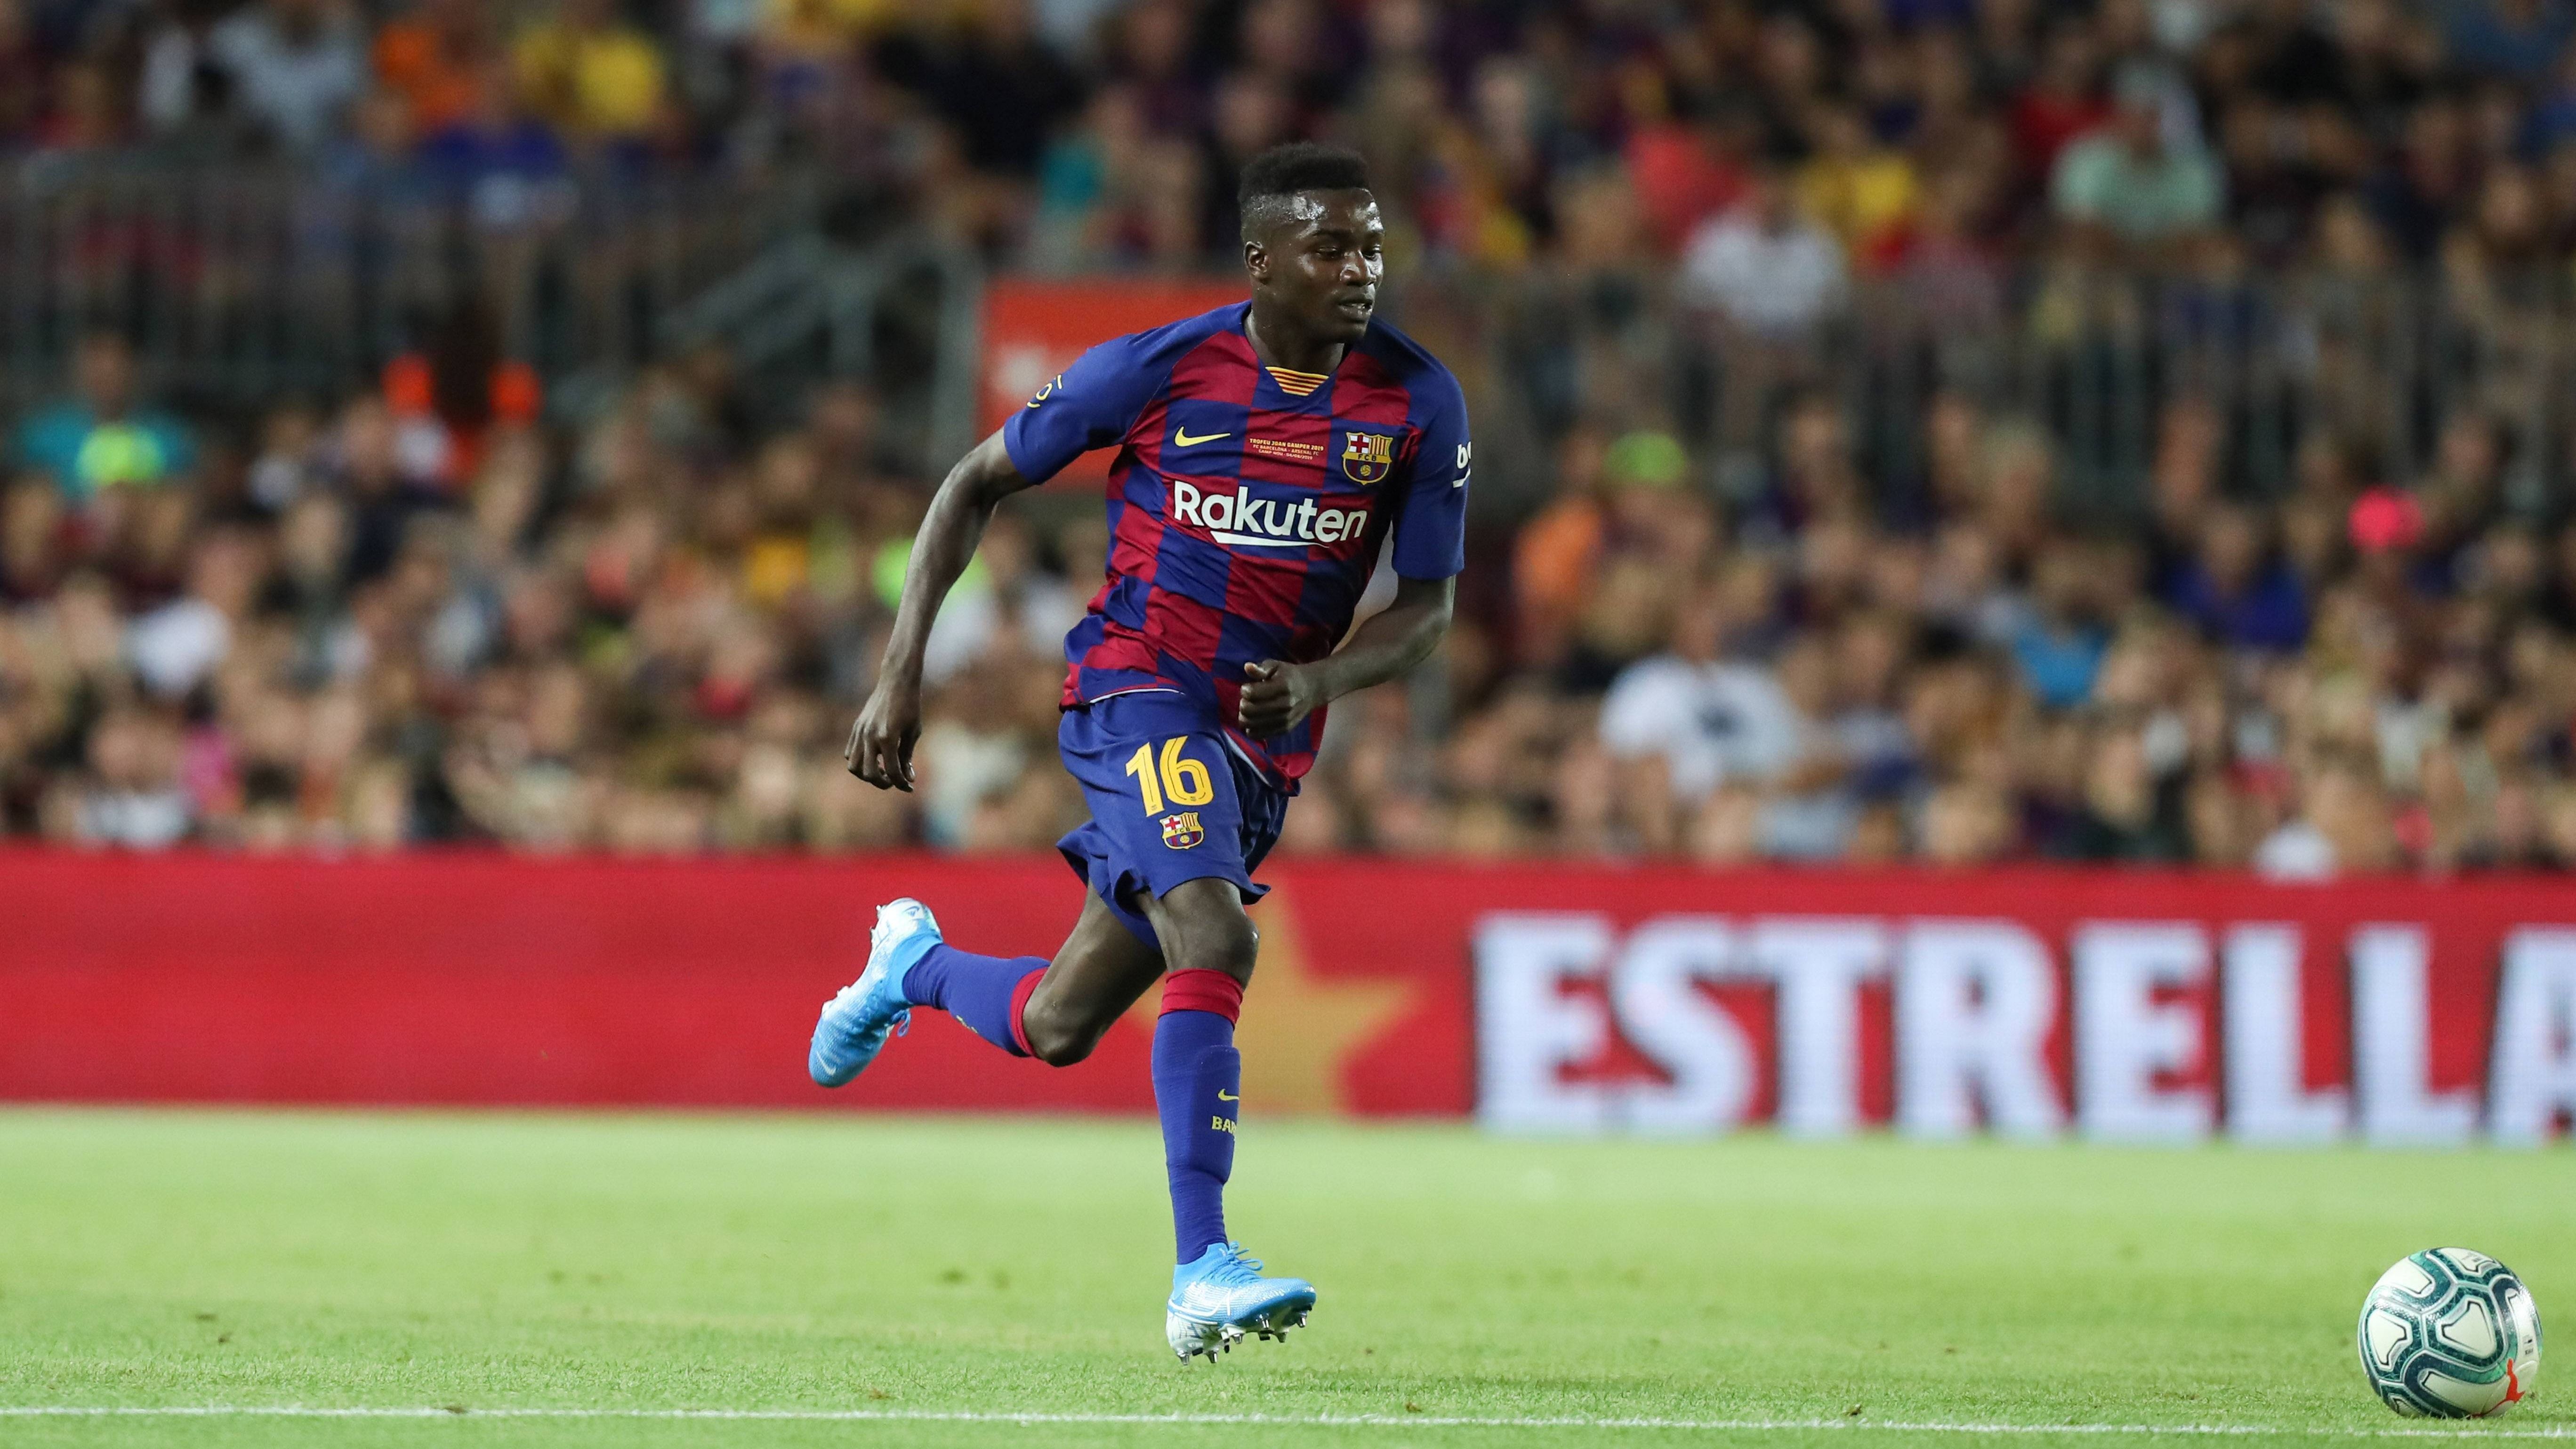 
                <strong>Moussa Wague (FC Barcelona)</strong><br>
                Der Senegalese kommt in der Nachspielzeit zu seinem Champions-League-Debüt, um an der Uhr zu drehen. ran-Note: ohne Bewertung
              